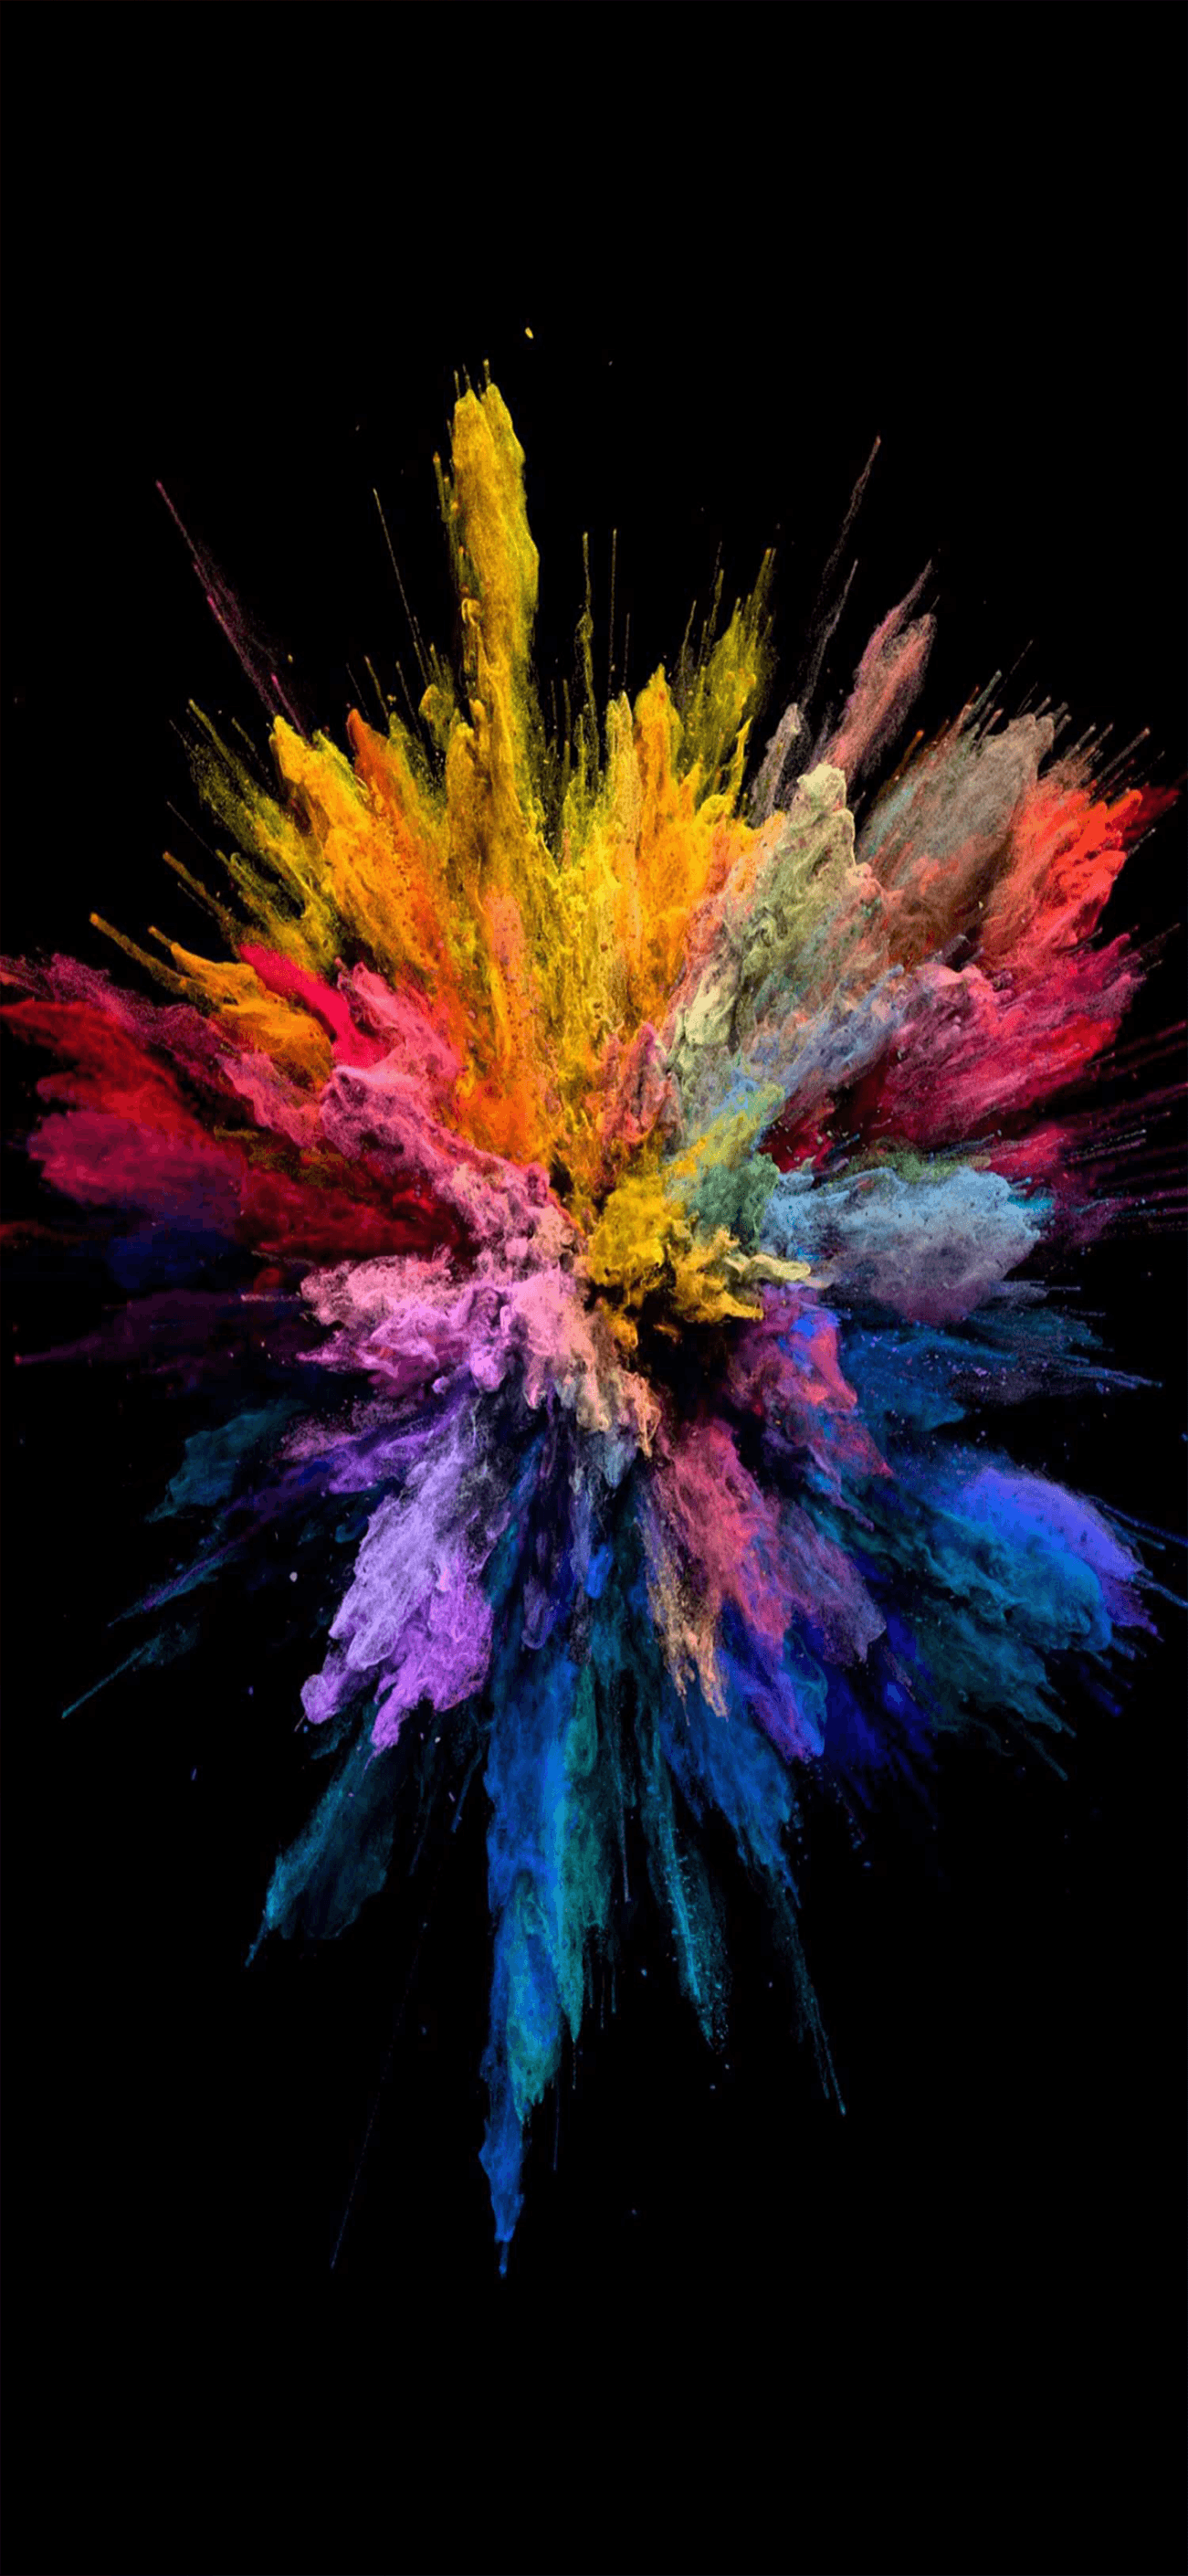 Explosión de colores - Wallpapers Central